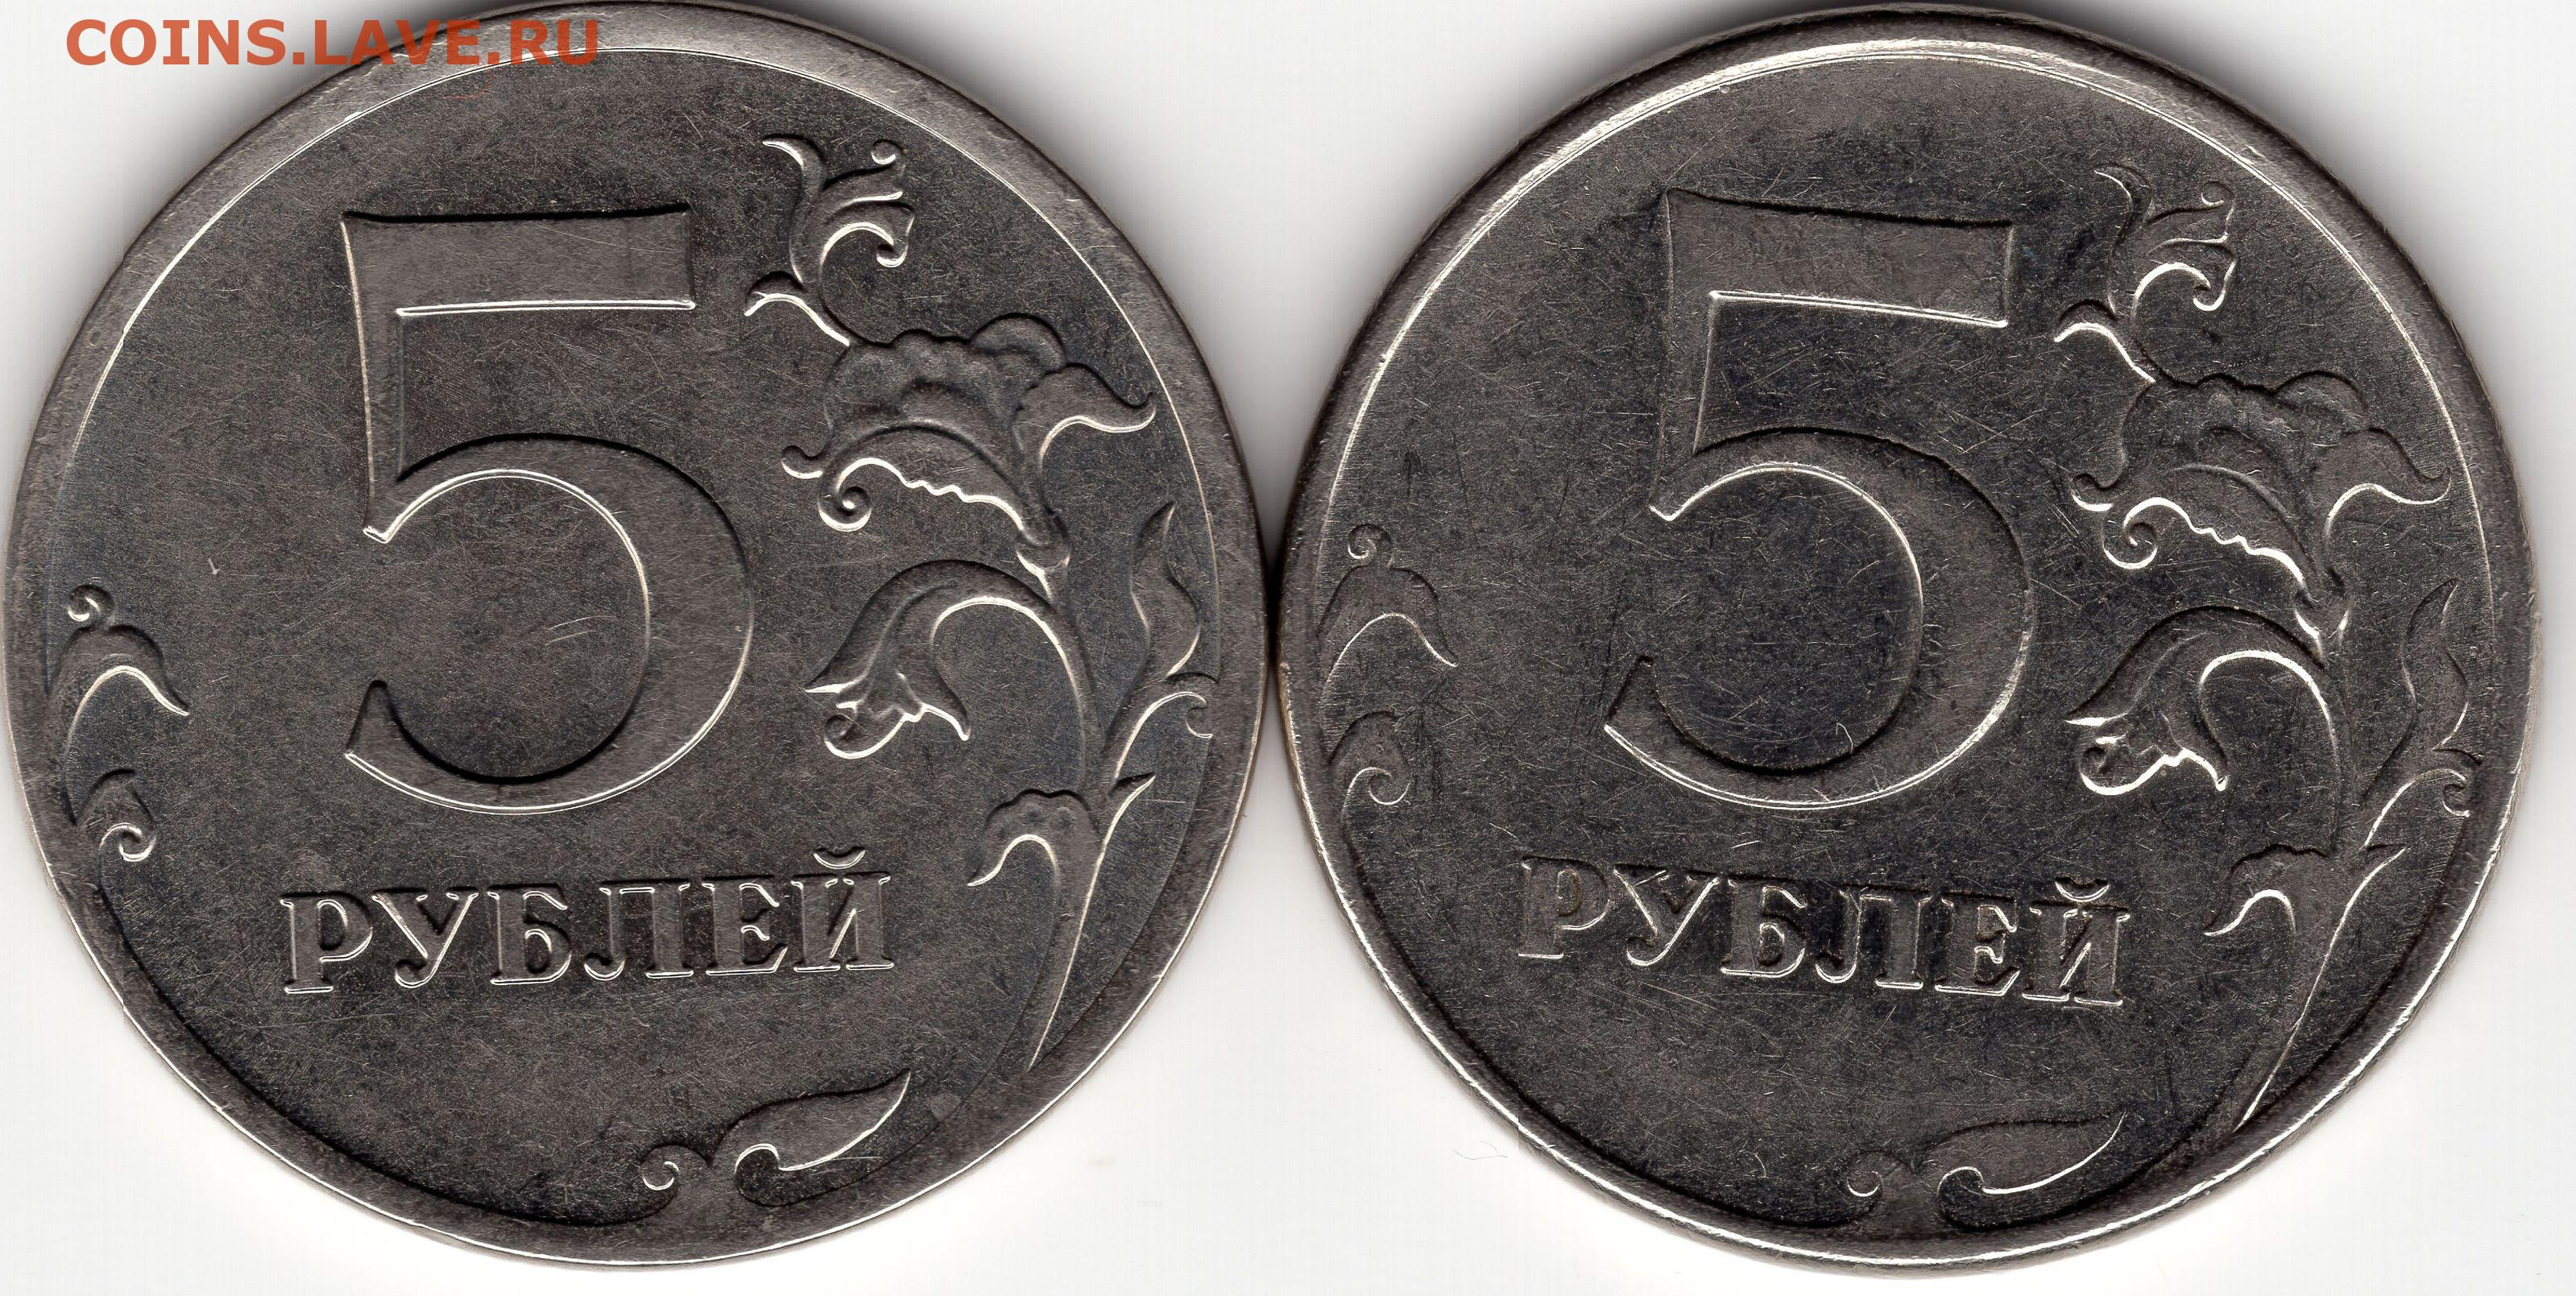 Лицевая сторона монеты 5. Лицевая сторона 5 рублей. Лицевая сторона монеты 5 рублей. 5 Руб 2012г. Лицевая сторона монеты 5 руб.